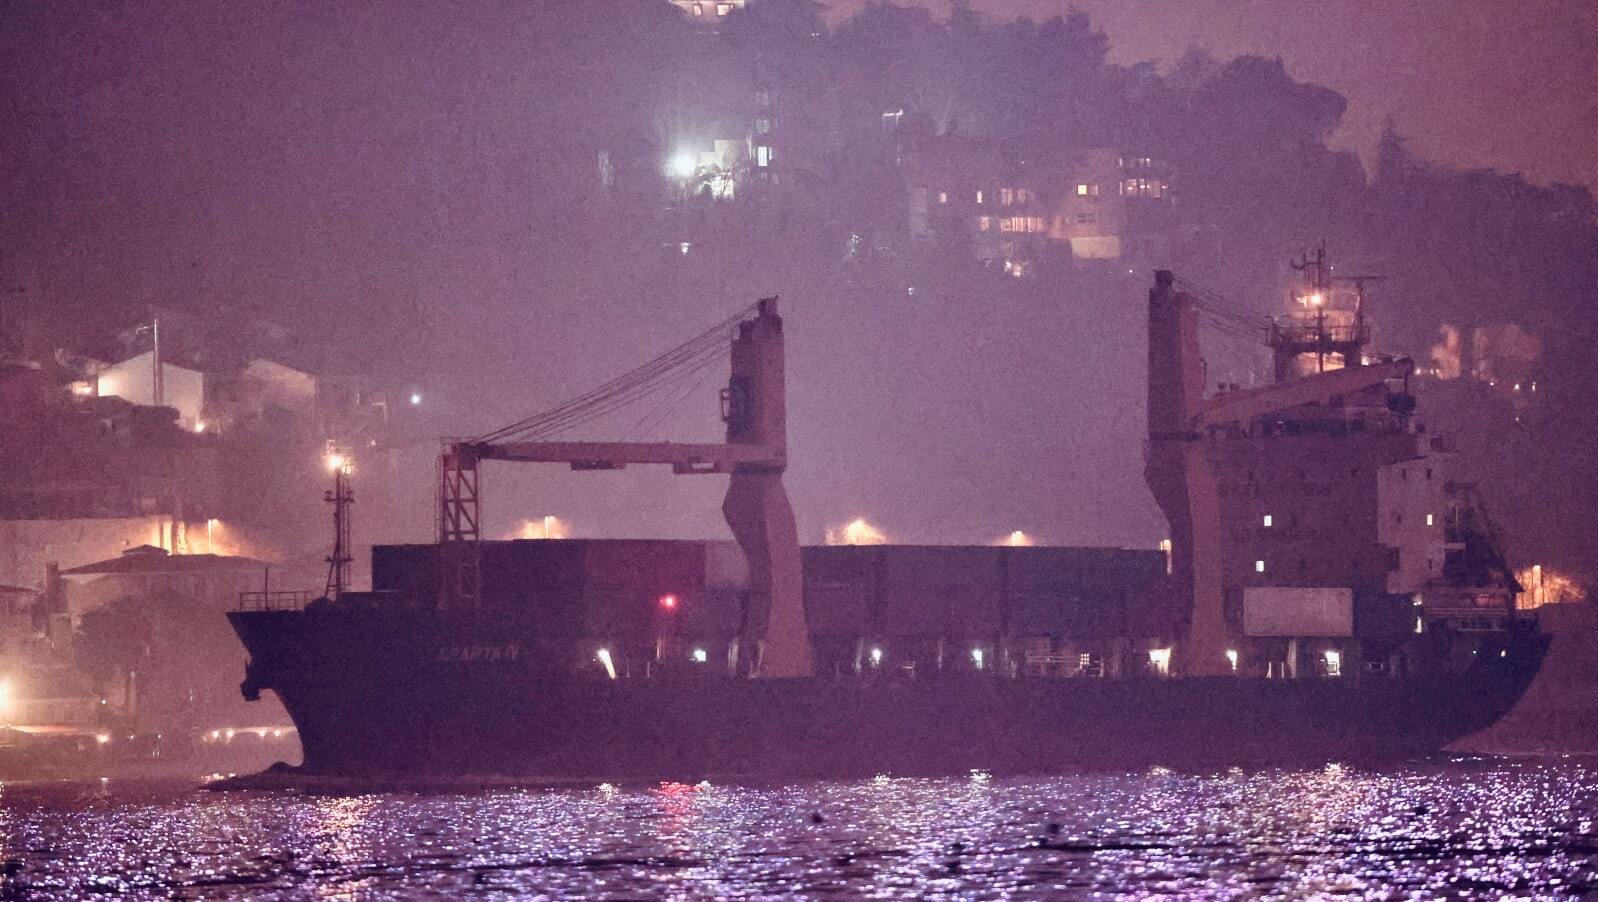 Російський корабель MV Sparta IV пройшов через Стамбул на шляху до російської бази в Чорному морі в ніч на 4 березня. Транспортні контейнери можна побачити складеними на палубі над трюмами